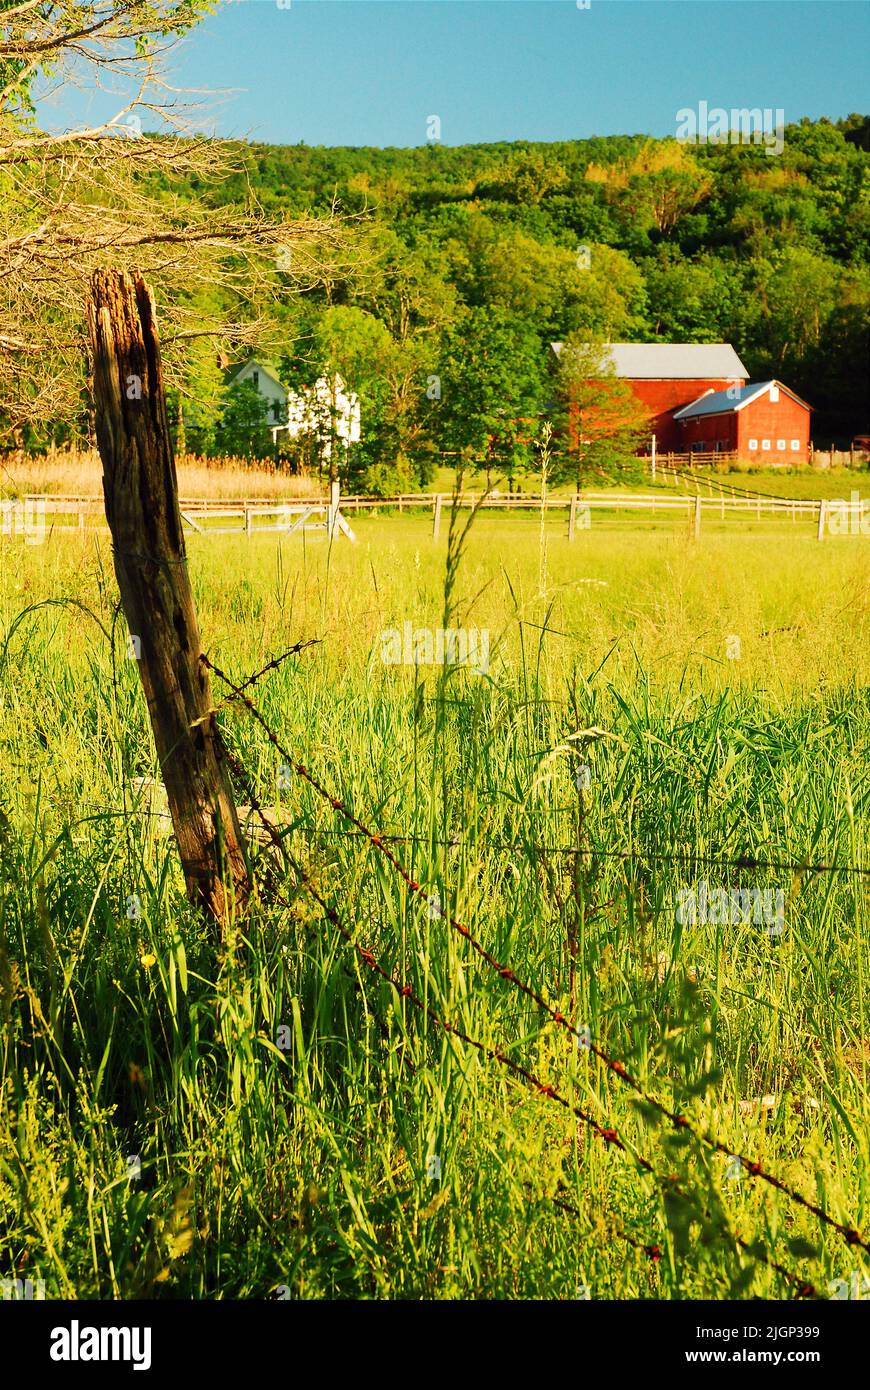 Una valla de brujo de púas, unida a un poste de madera en descomposición, protege una granja familiar en una remota zona rural del Valle del Hudson Foto de stock